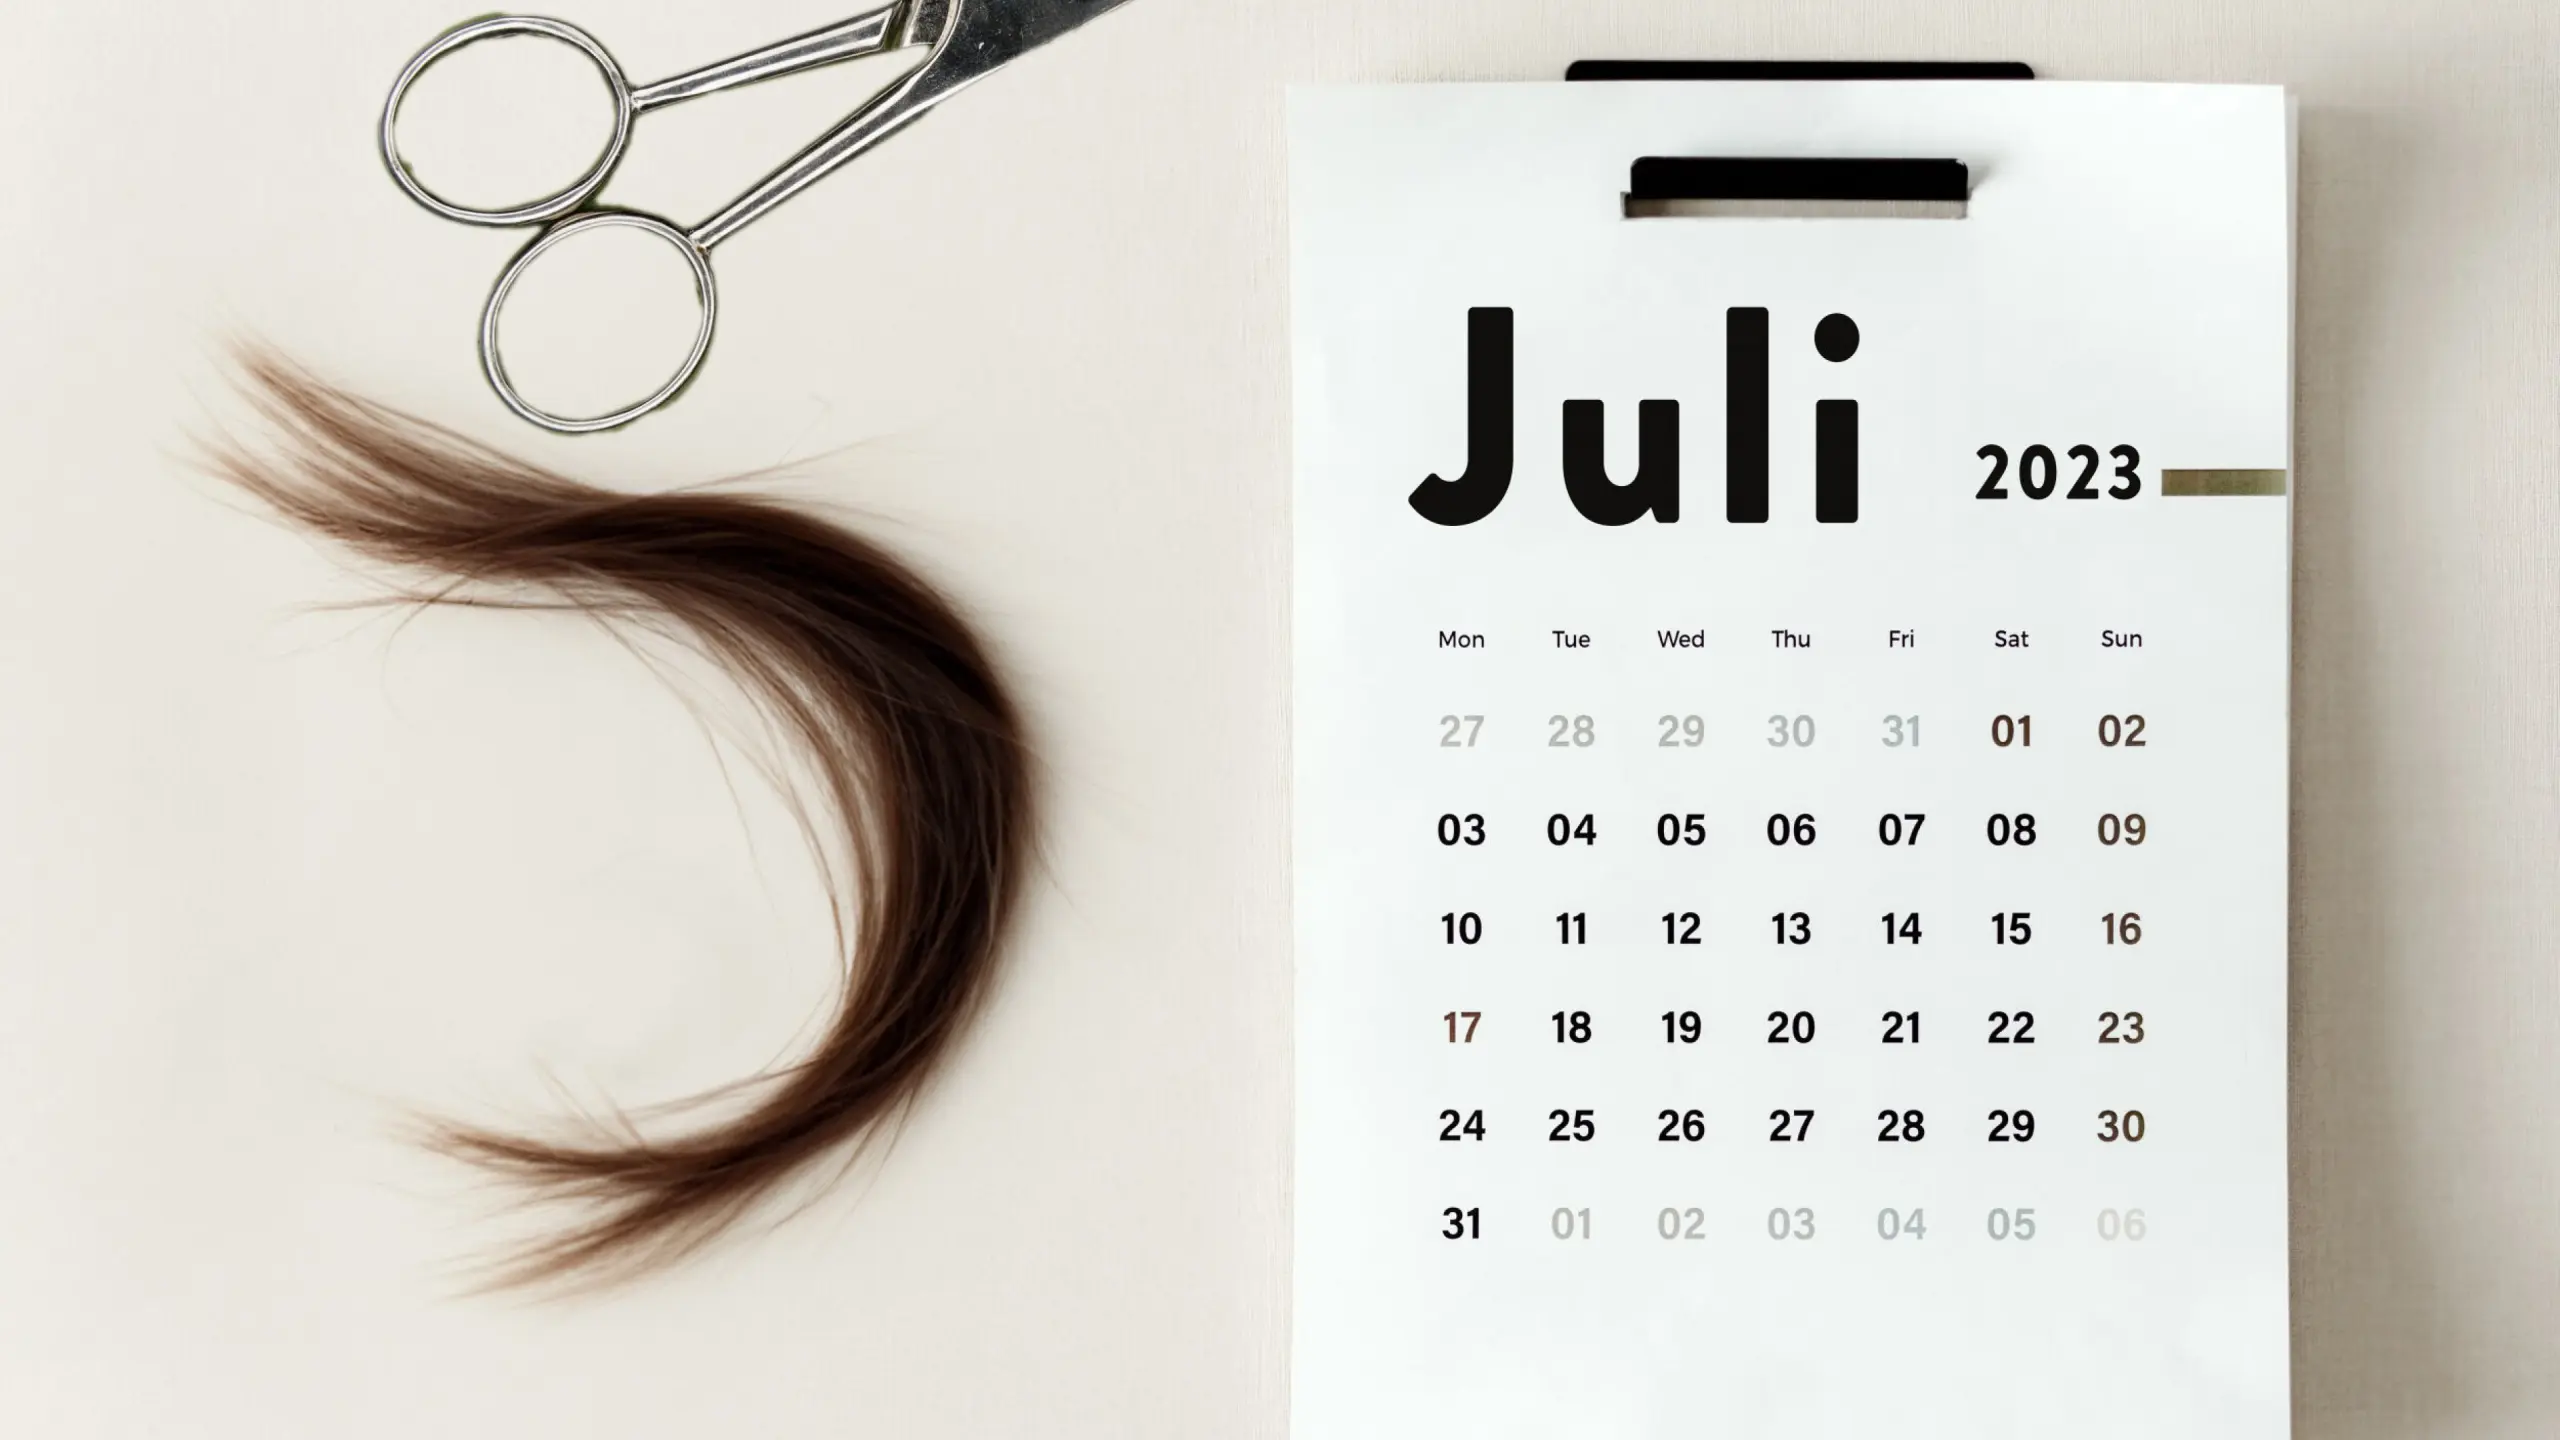 Haare schneiden nach Mondkalender: Haarschnitte an Vollmond, Neumond &amp; Co